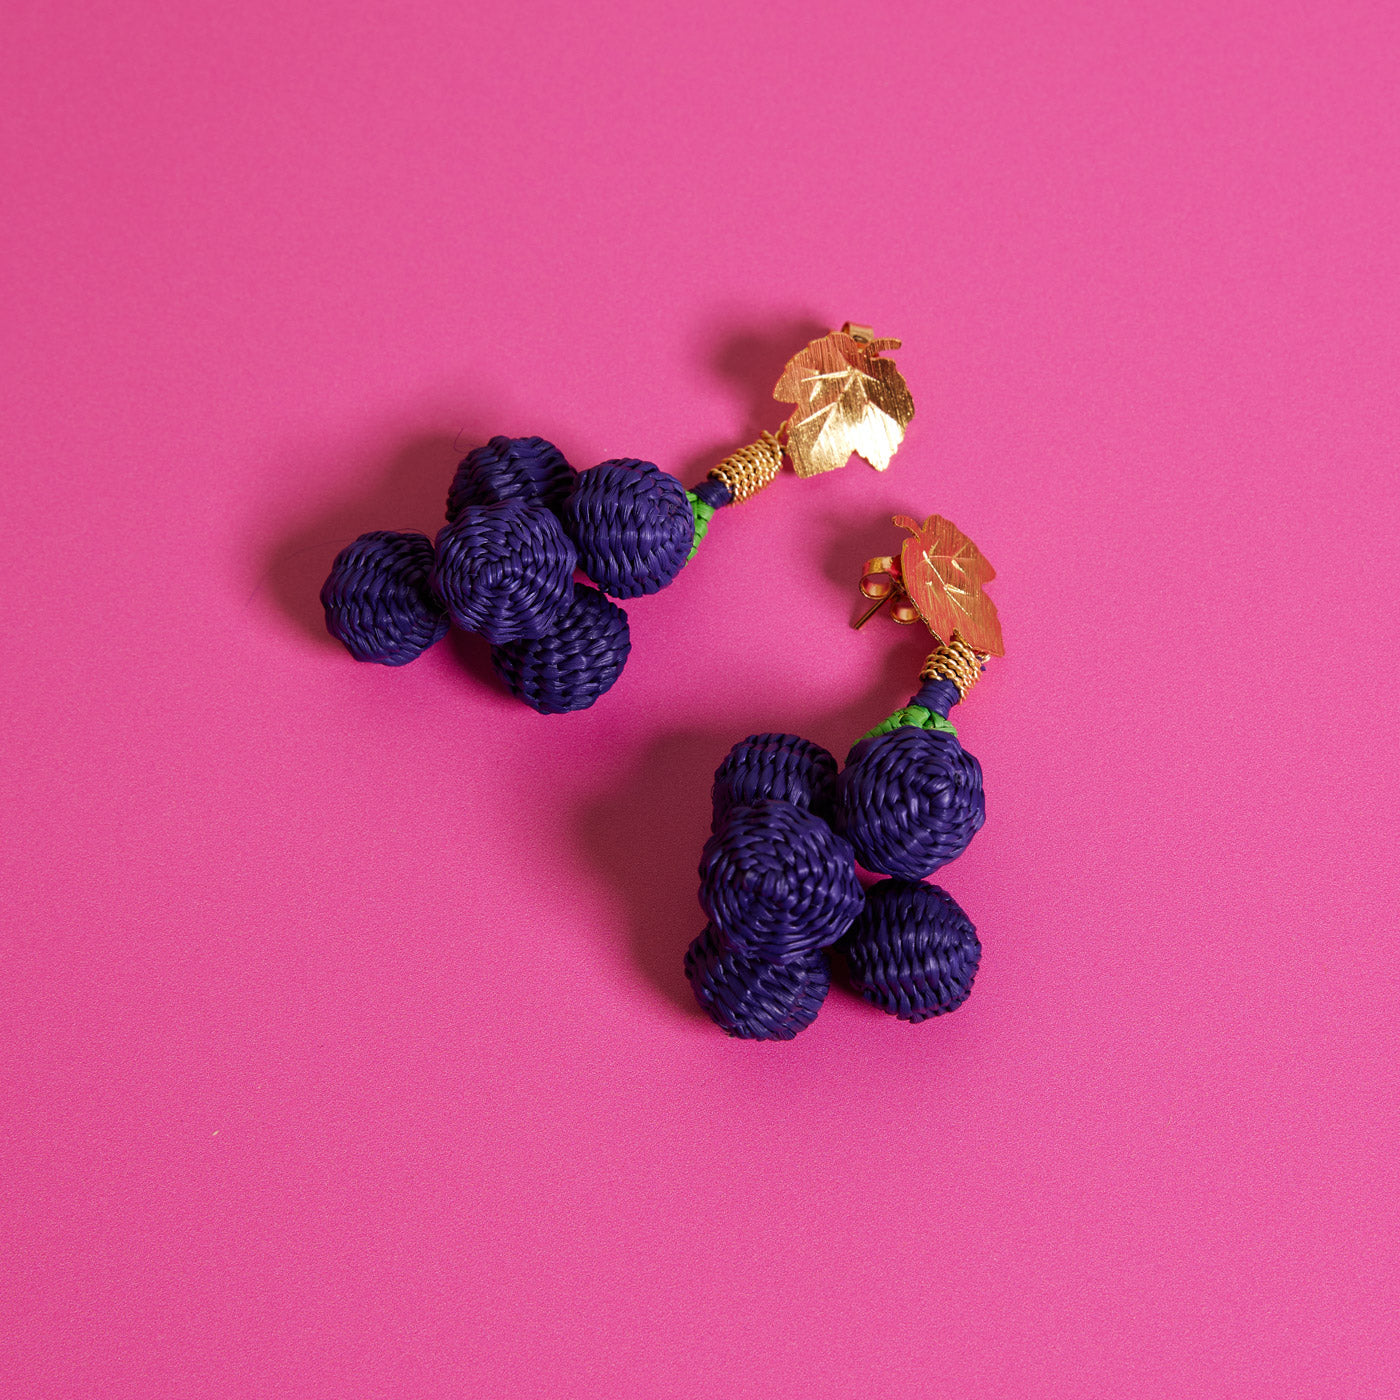 Wicker Darling's Grape earrings on a pink background